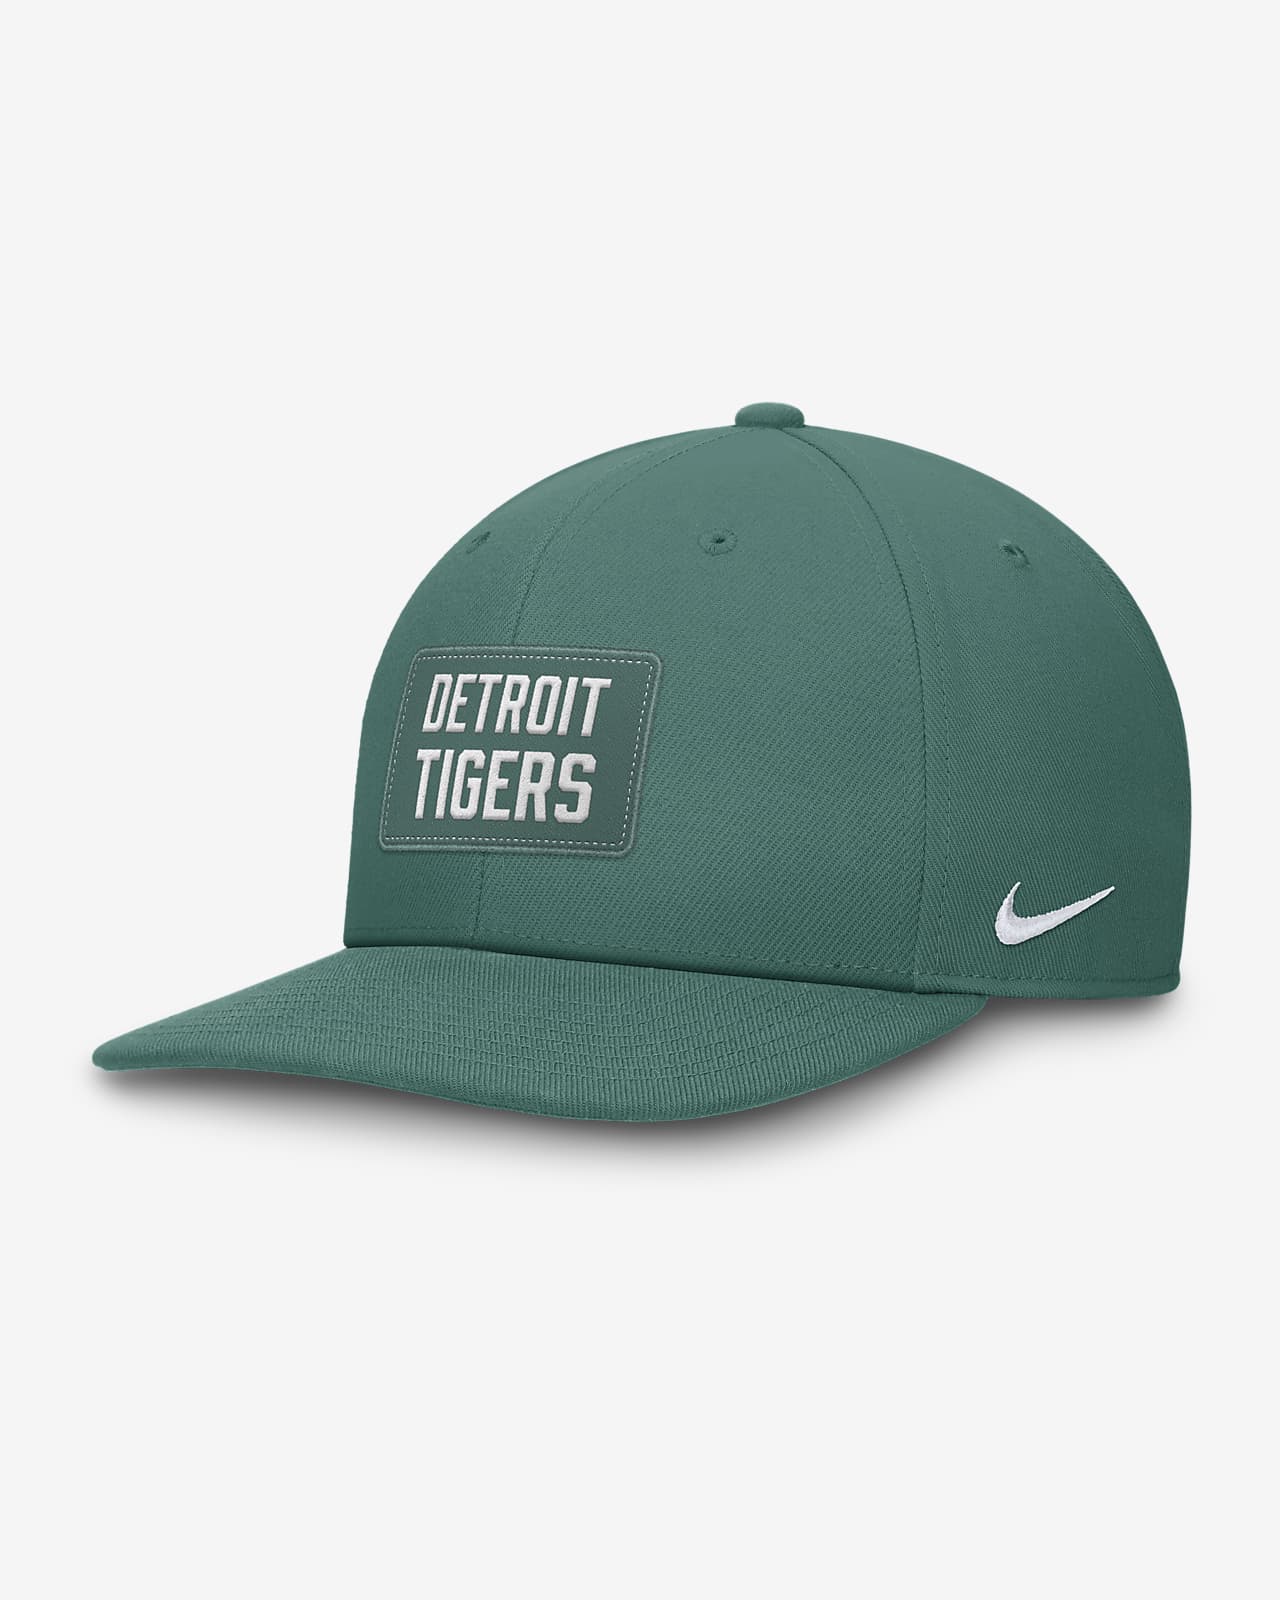 Detroit Tigers Bicoastal Pro Men's Nike Dri-FIT MLB Adjustable Hat